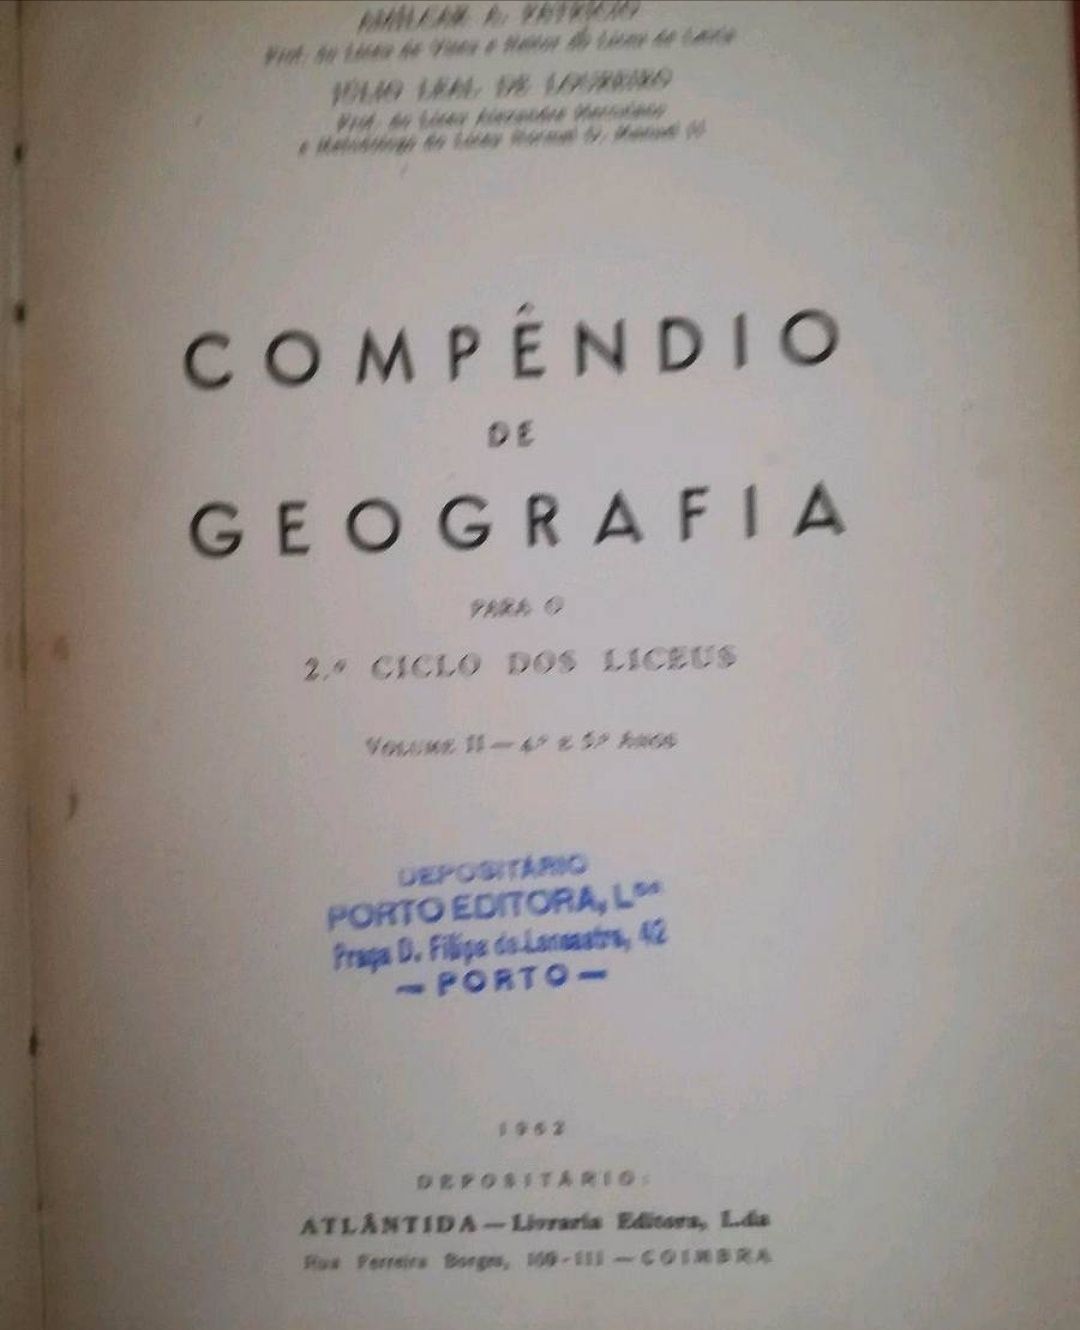 Compêndio de Geografia (1962)